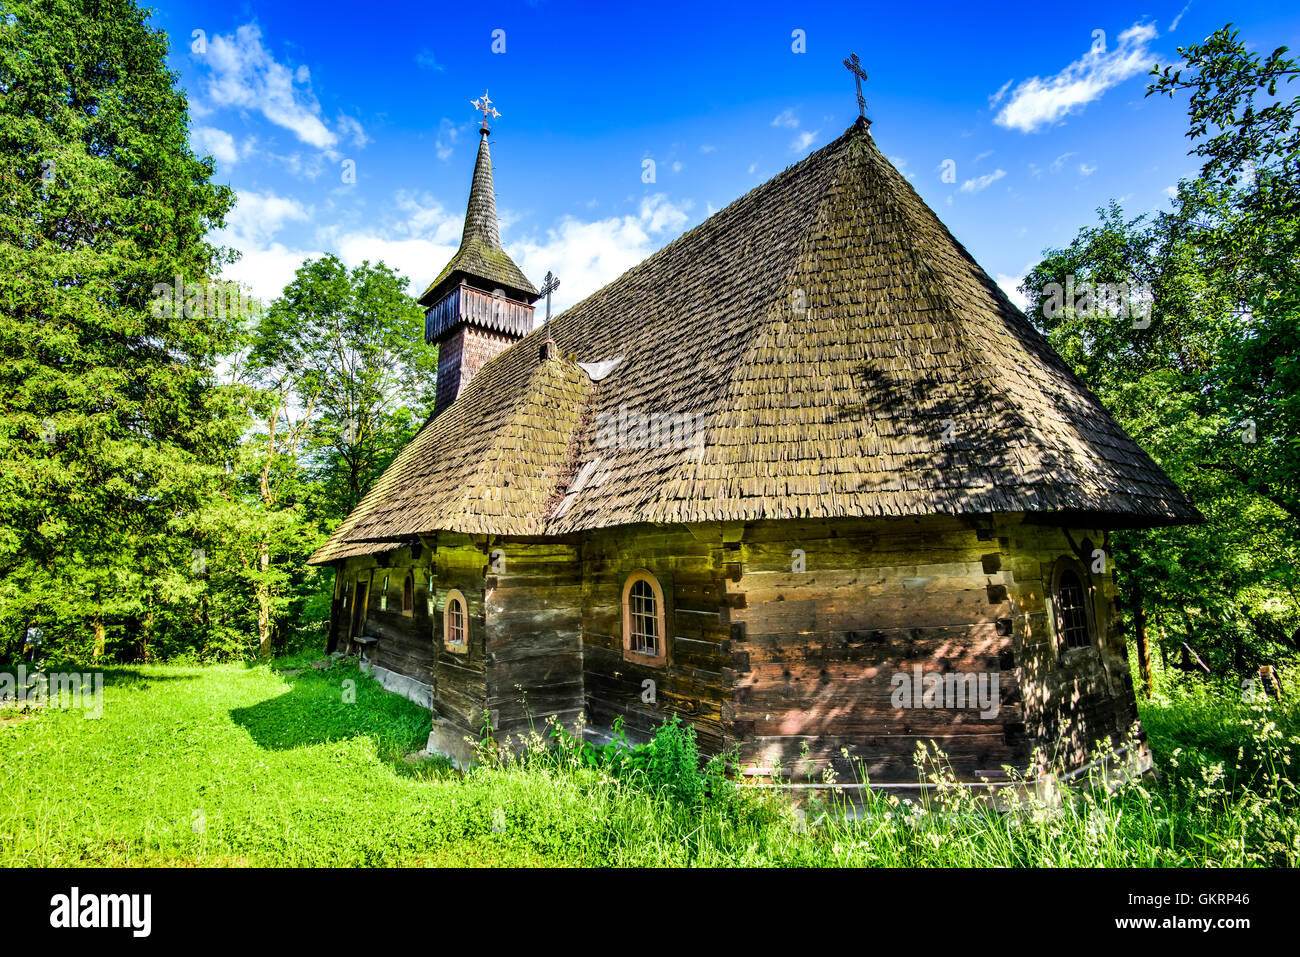 Breb, Rumänien. Altes Dorf in Maramures, rumänischen traditionellen hölzernen Kirche Baustil, Leben auf dem Lande. Stockfoto